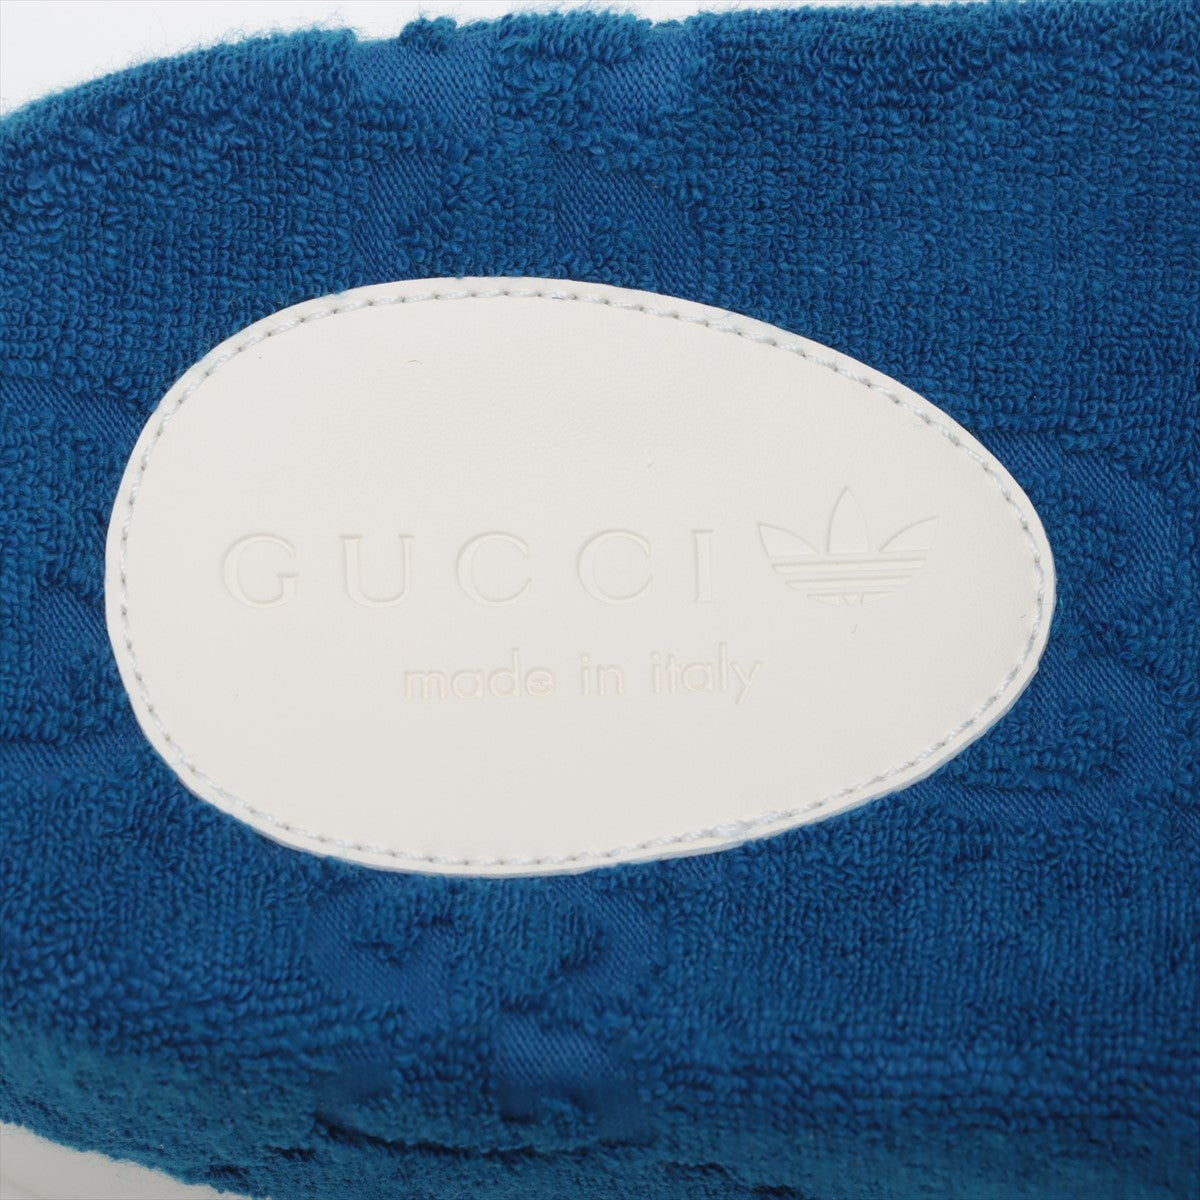 Gucci x Adidas GG Supreme Cotton x Leather Sandal 9 Men Blue x White Box  Bag